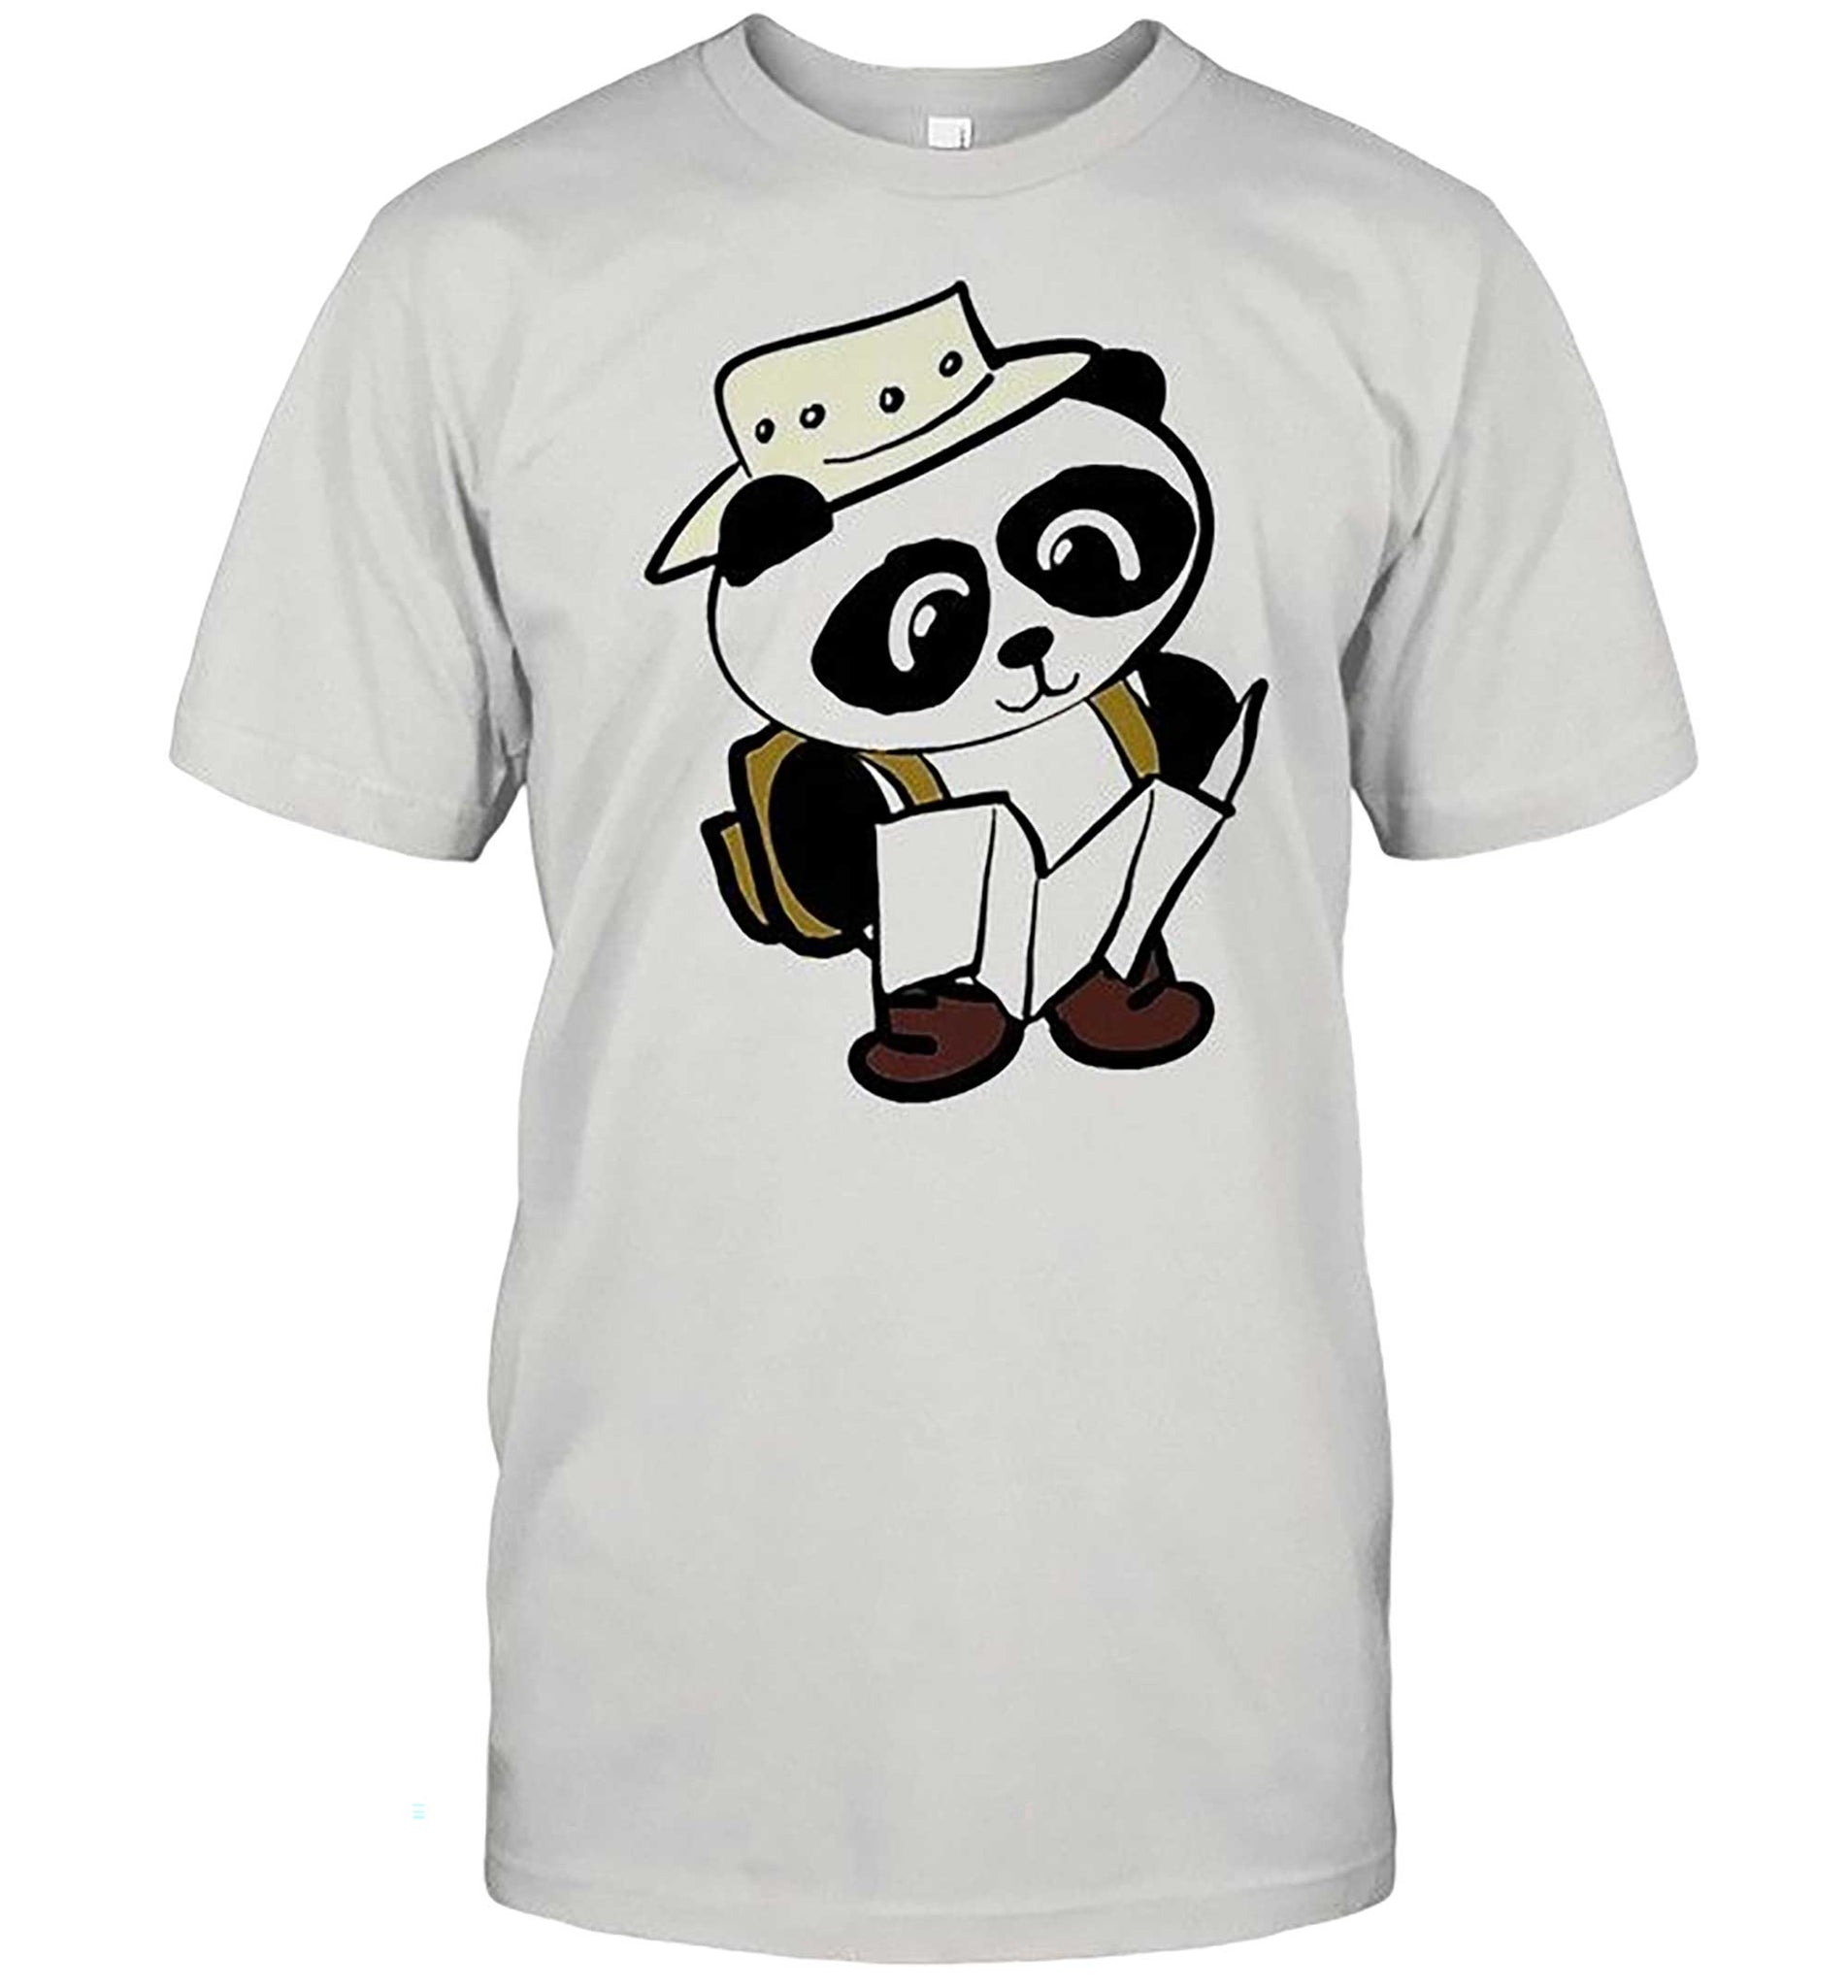 Skitongift-Adventure-Panda-Shirt-Funny-Shirts-Hoodie-Sweater-Short-Sleeve-Casual-Shirt